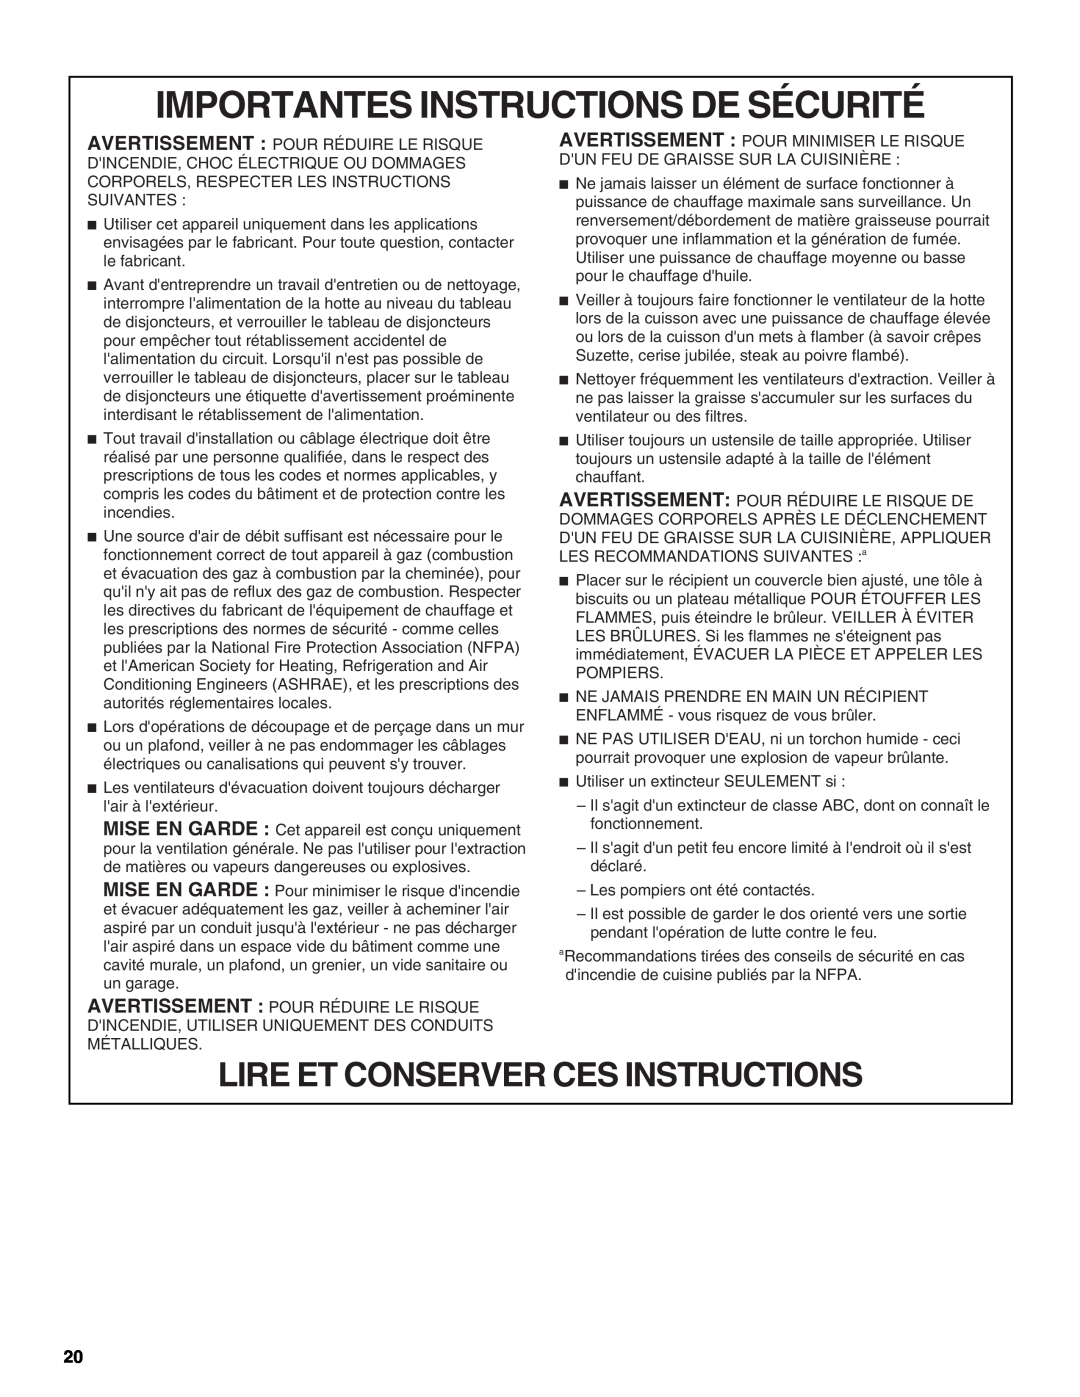 KitchenAid W10267109C installation instructions Importantes Instructions De Sécurité, Lire Et Conserver Ces Instructions 